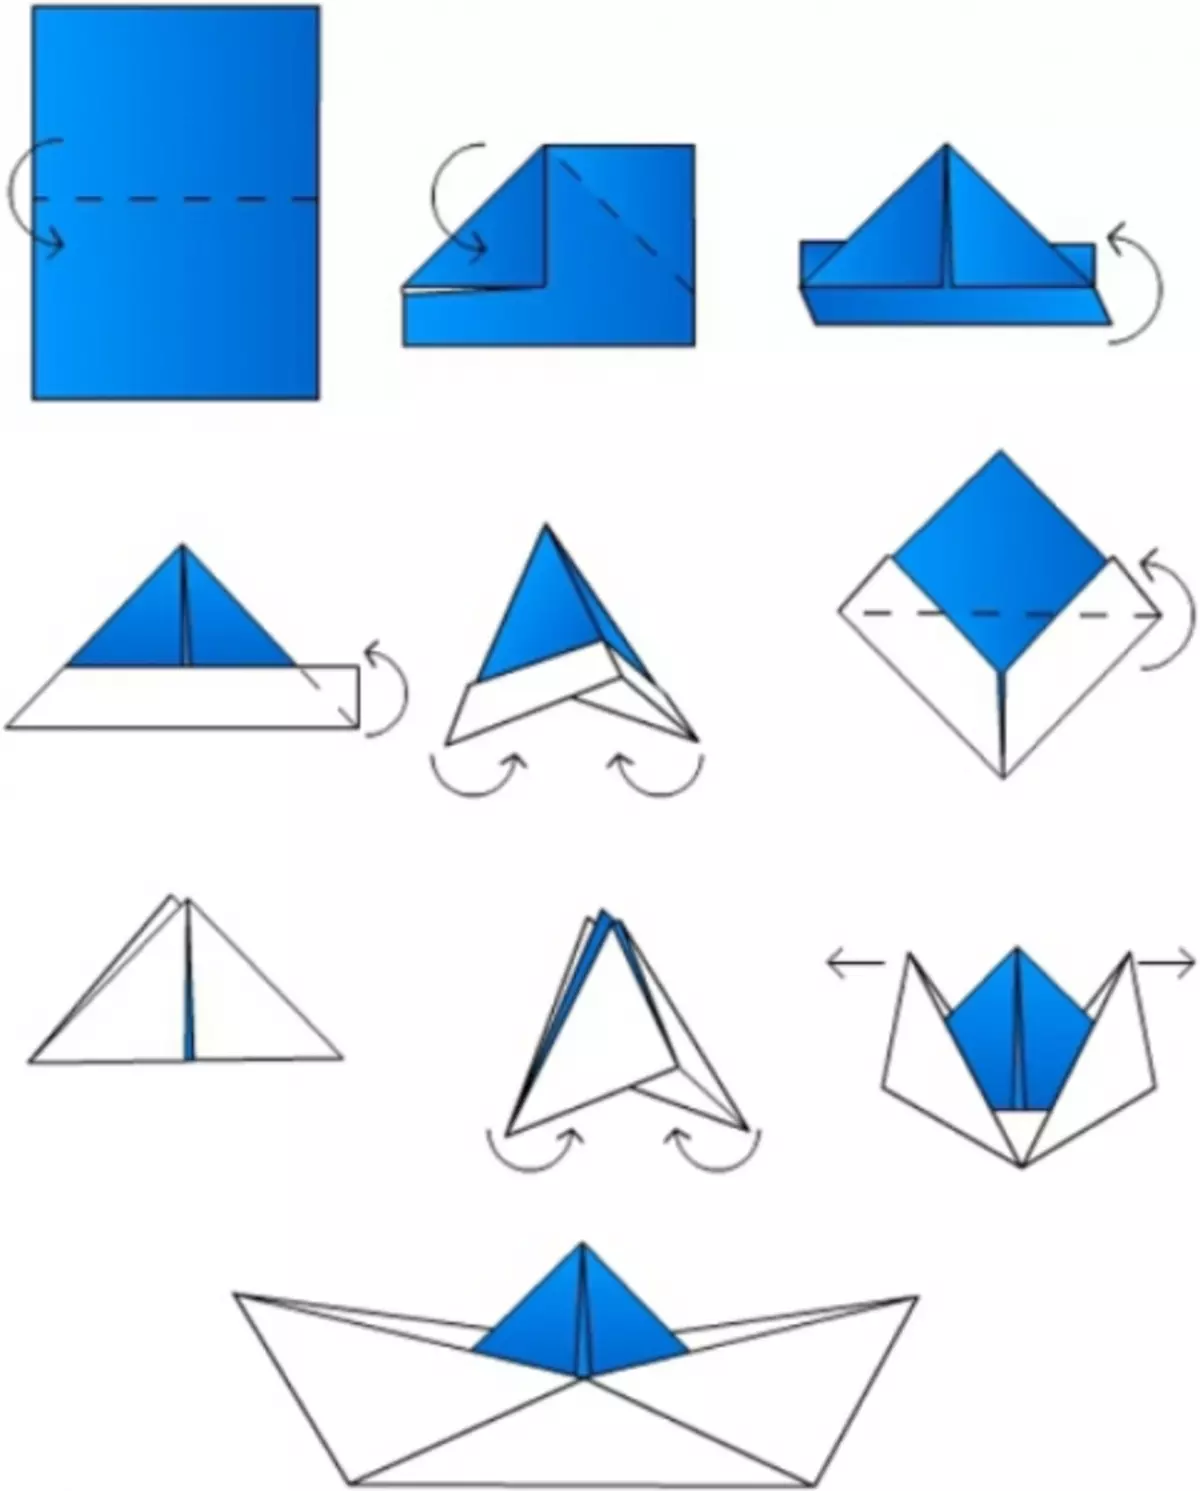 Cómo hacer papel de origami: barco, plano y tanque con video.